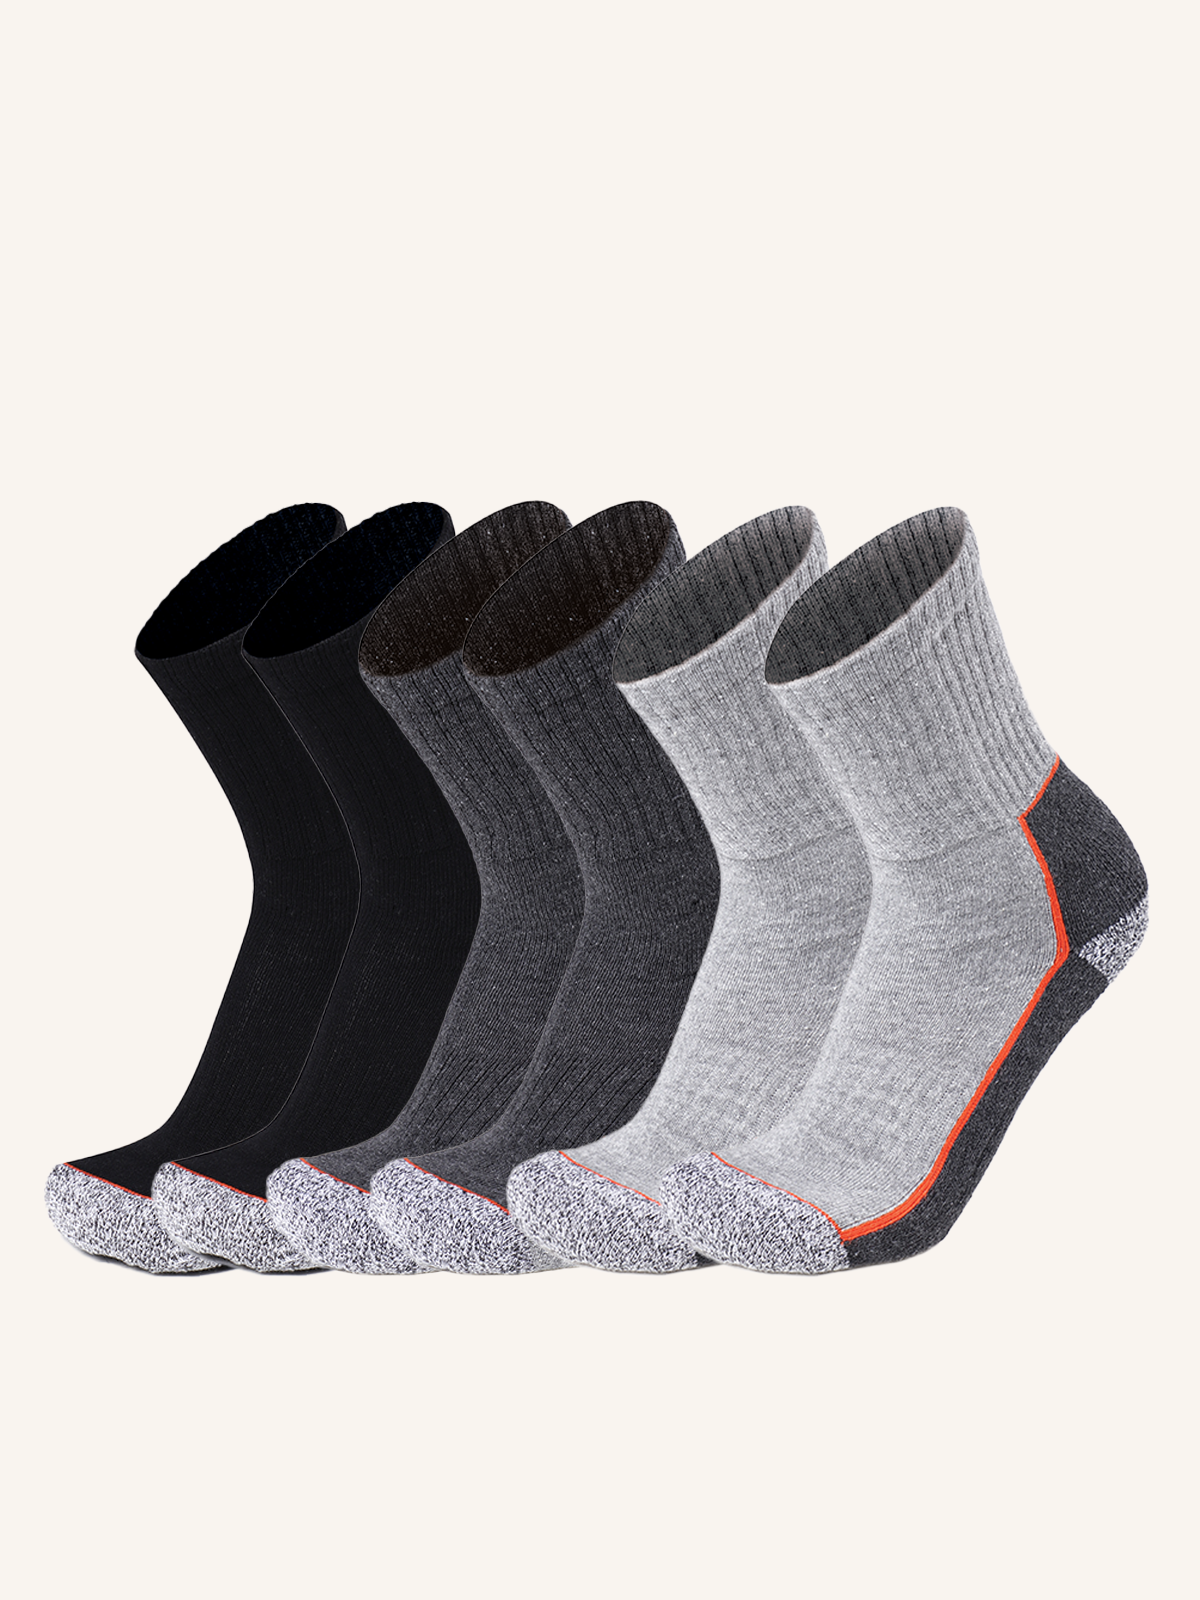 Short Sock in Resistant Material for Men | Plain Color | Pack of 6 Pairs | JOB 01